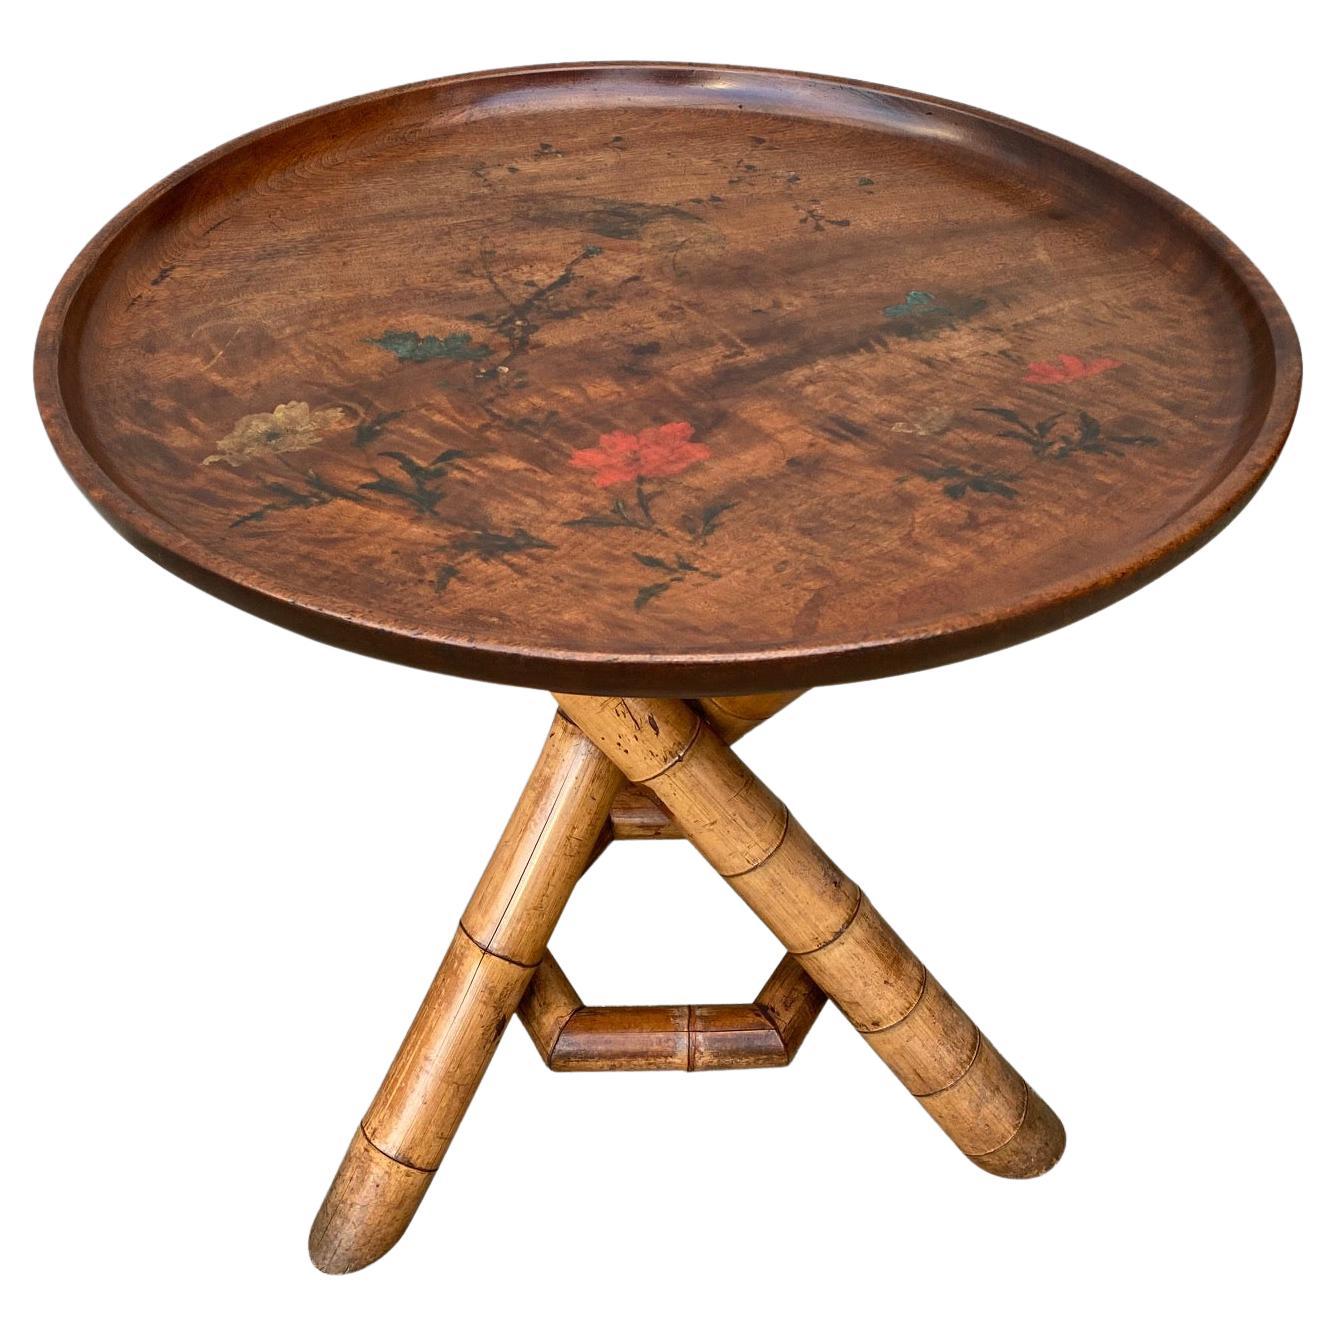 Runder Dreibein-Tisch aus Bambus im Kolonialstil des 19. Jahrhunderts